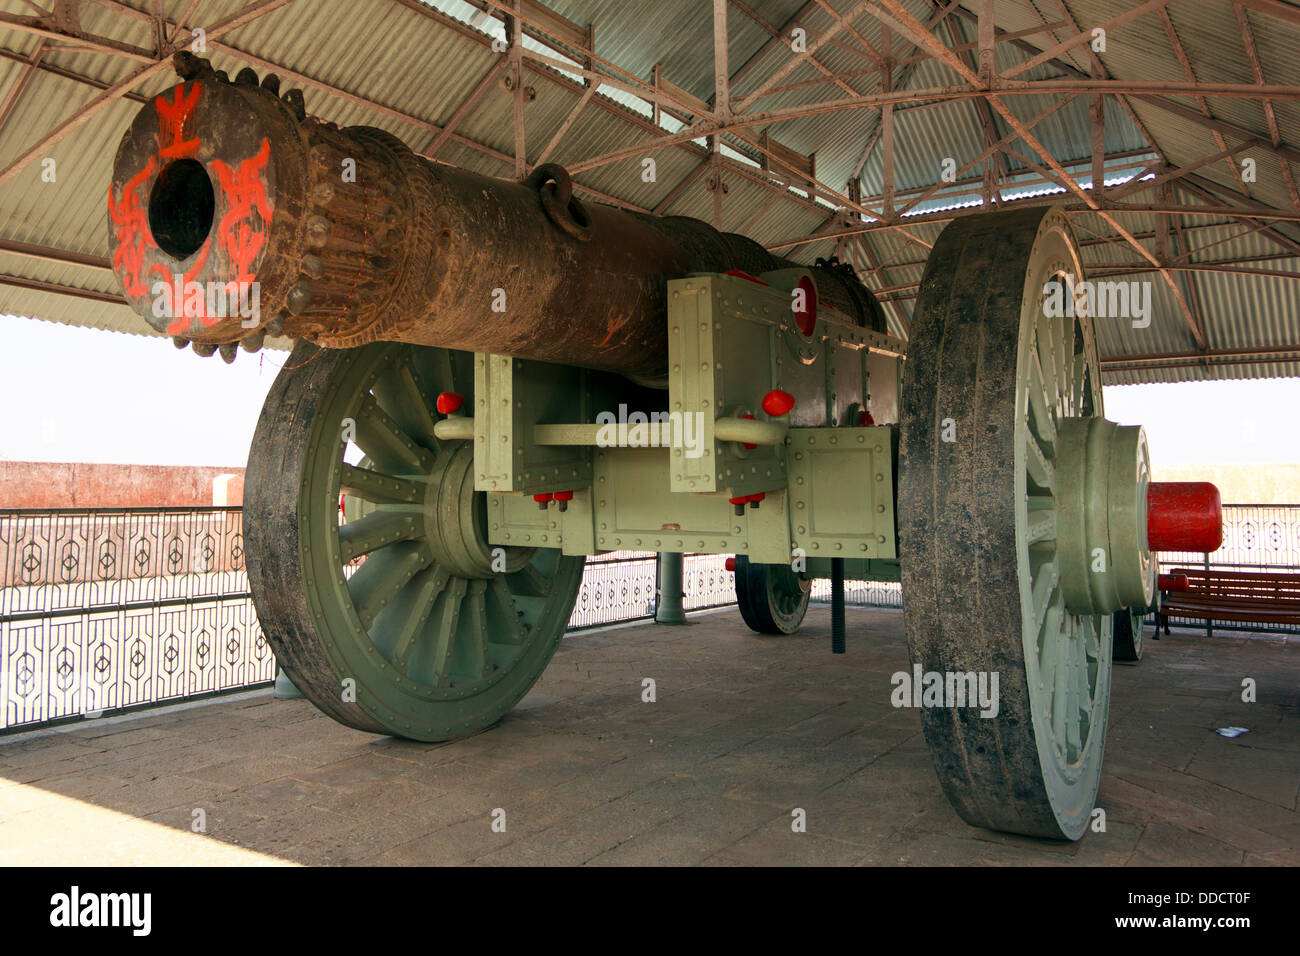 Die Jaivana, die Kanone die größte fahrbare Kanone, die jemals gebaut wurde ist befindet sich am Jaigarh Fort, Jaipur, Rajasthan, Indien. Stockfoto